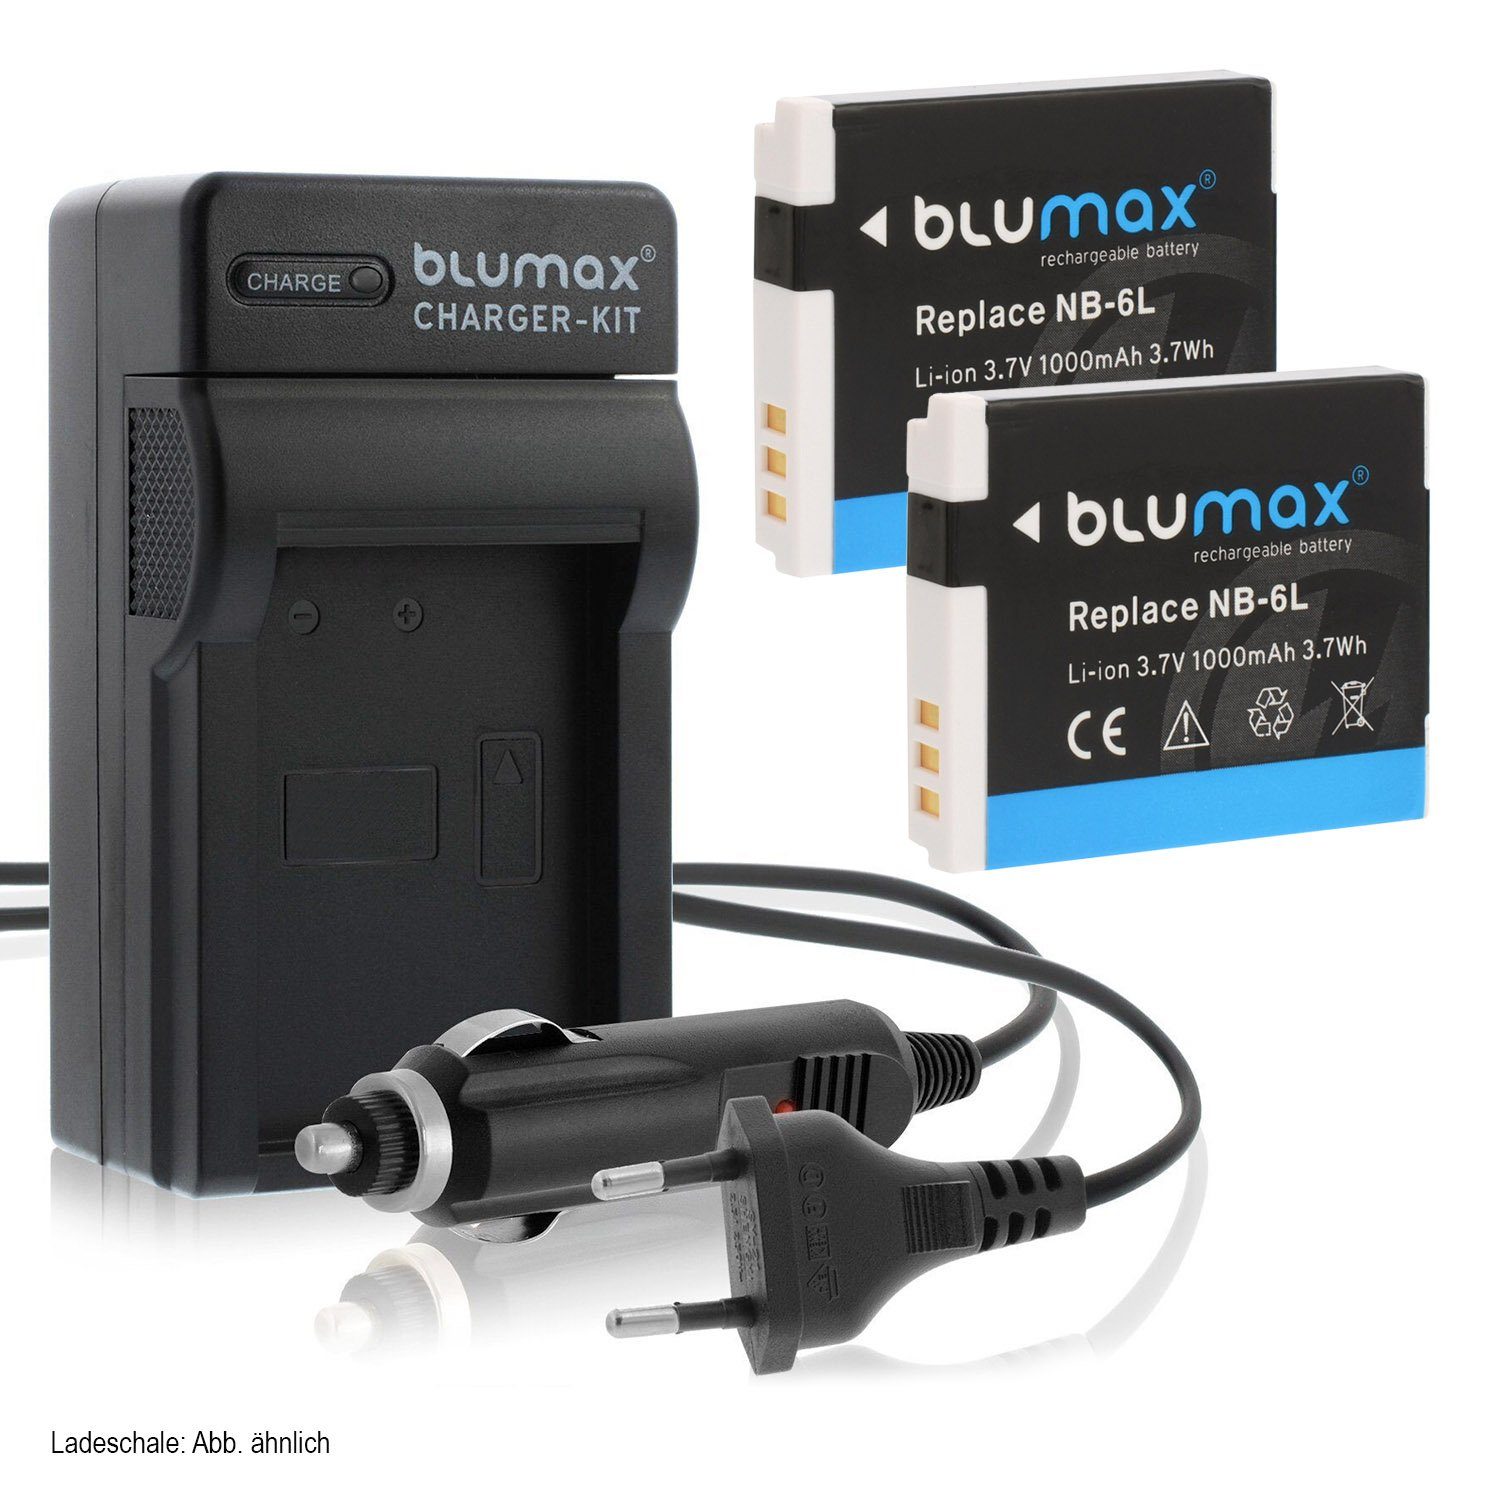 Blumax Set mit Lader für Canon NB-6L SX270 HS, SX280 1000mAh Kamera-Akku